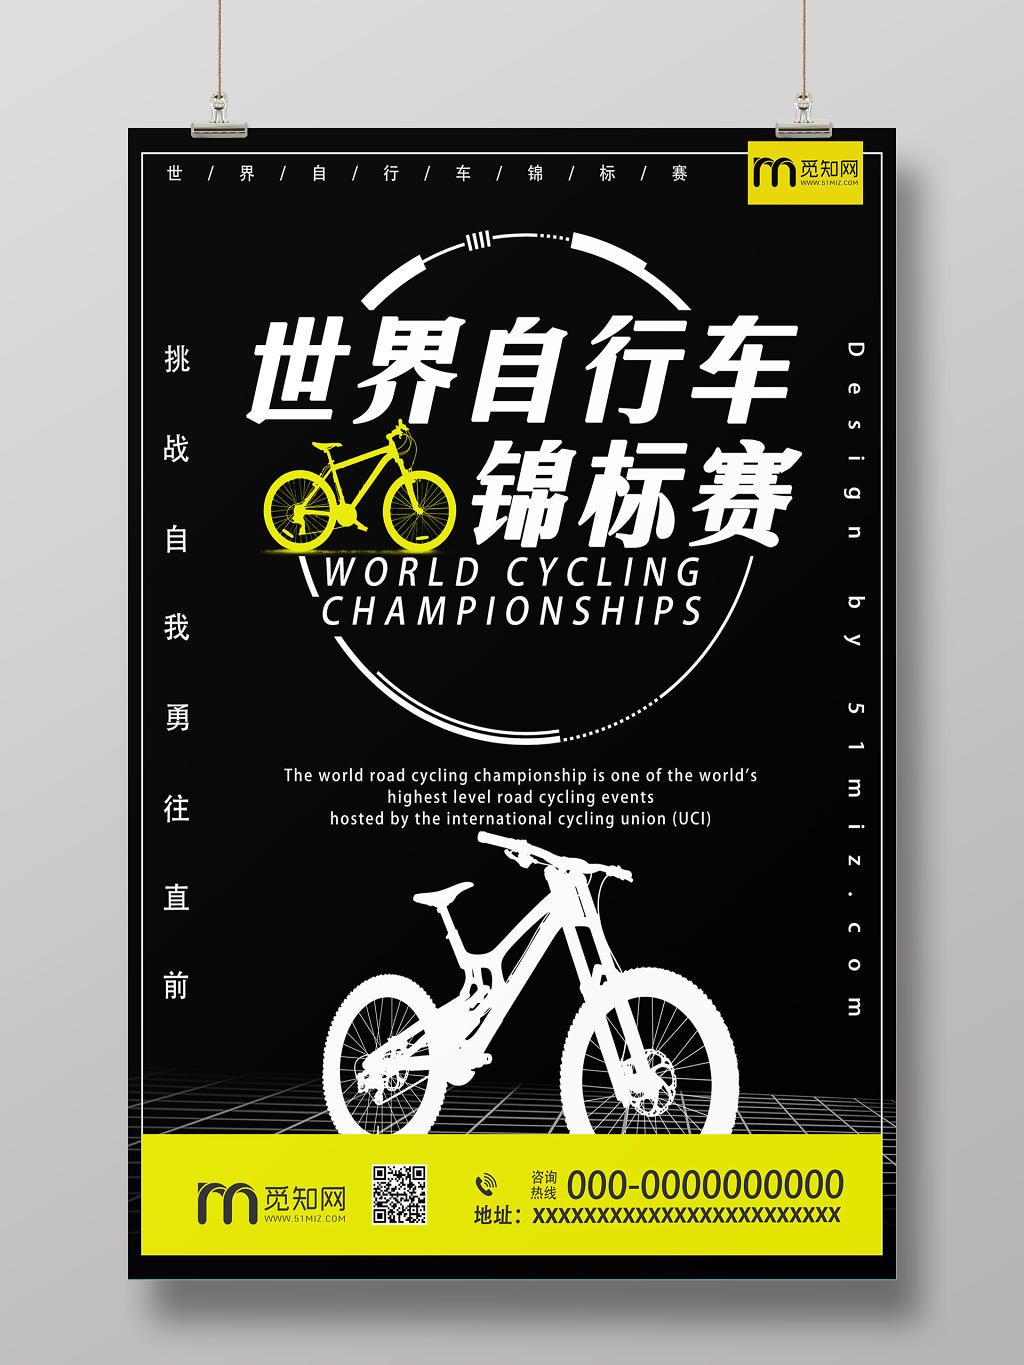 黑白黄色酷炫世界自行车锦标赛挑战自我勇往直前宣传海报